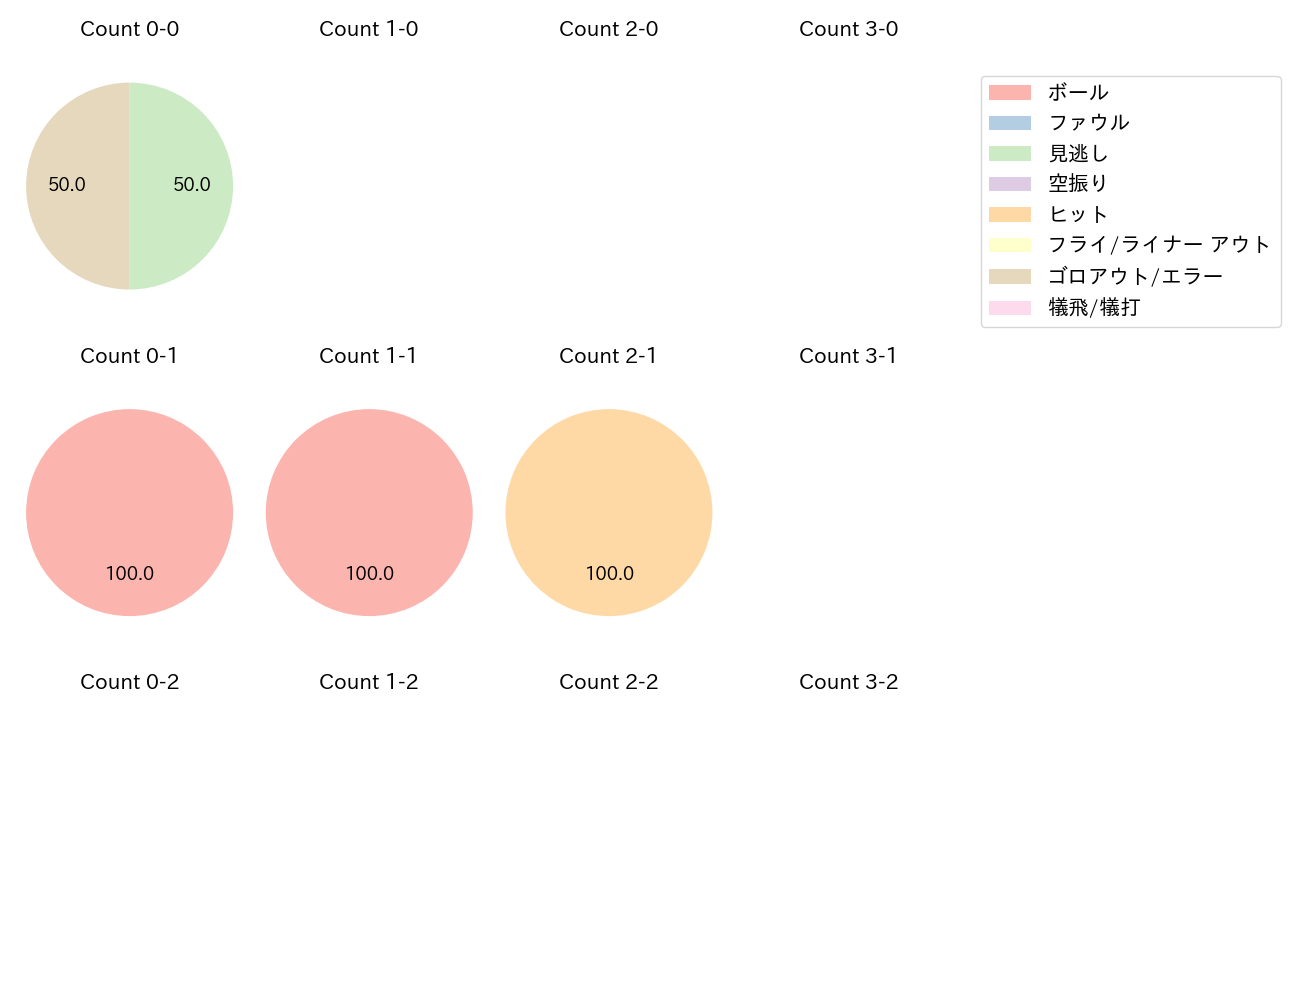 松井 聖の球数分布(2022年オープン戦)